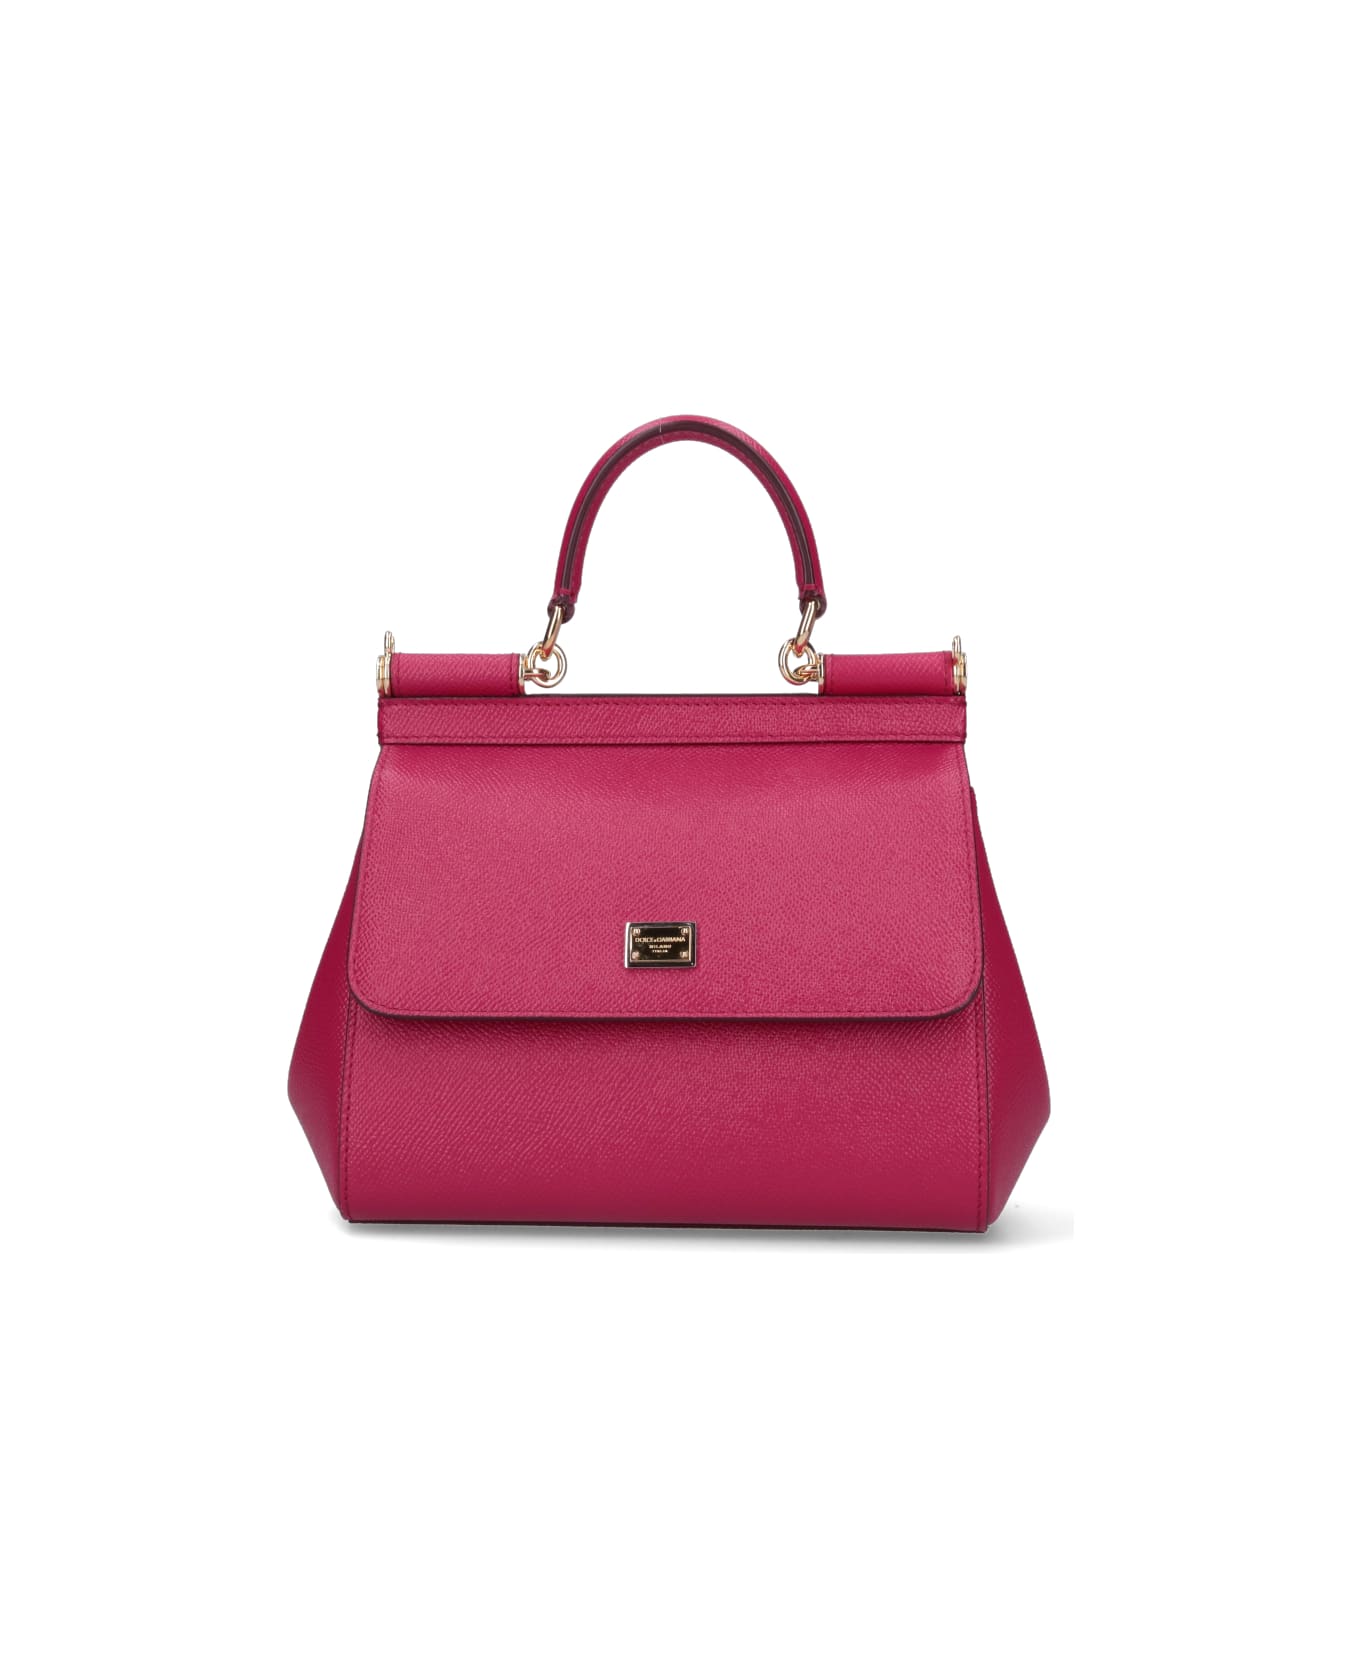 Dolce & Gabbana Medium Handbag "sicily" - Pink トートバッグ